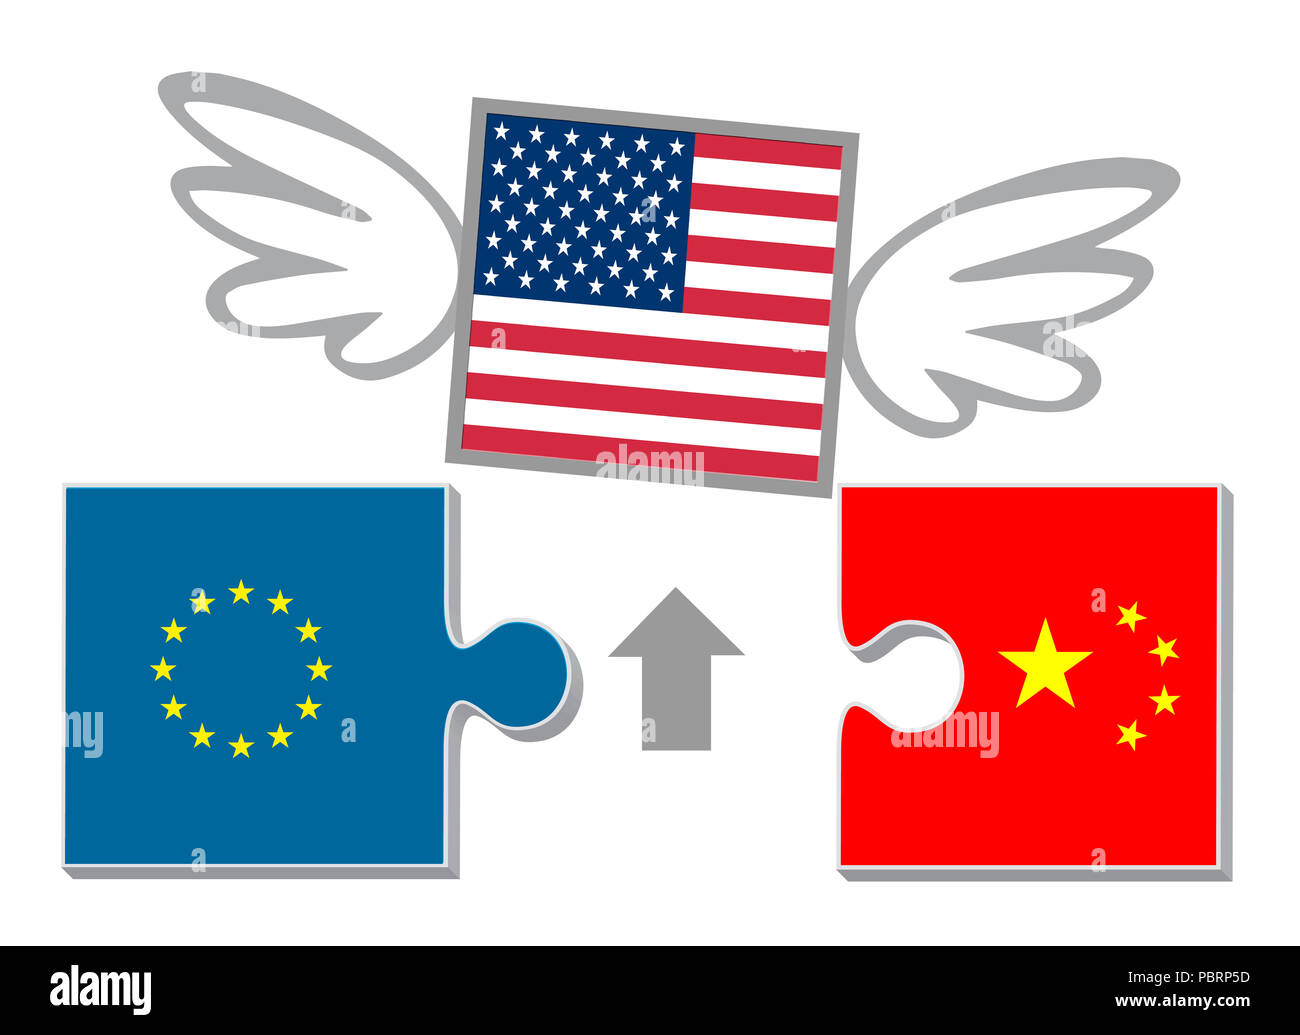 Uns wirtschaftliche Isolation stört der Lieferkette zwischen Nordamerika, Europa und China. Stockfoto